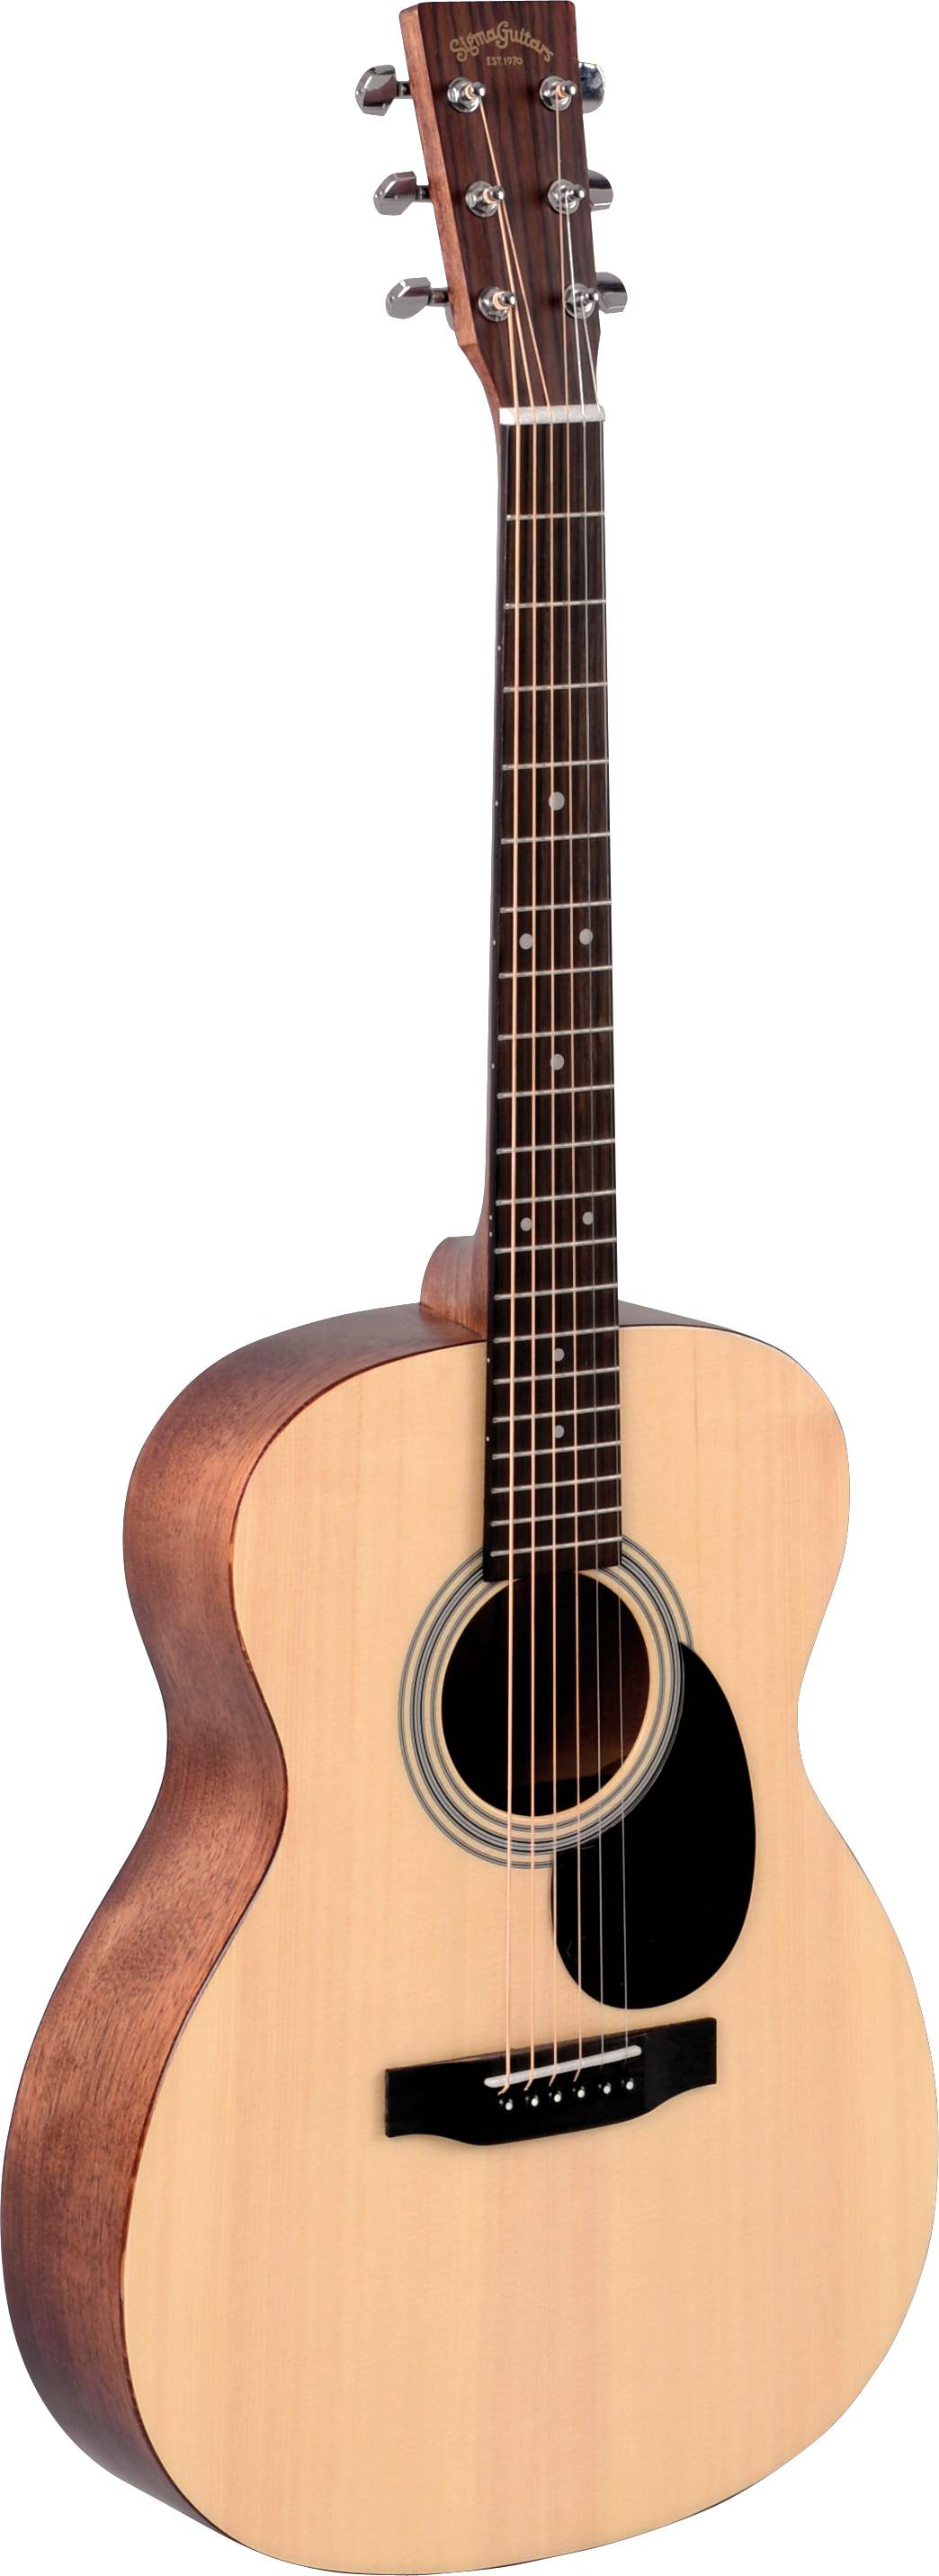 Акустические гитары Sigma OMM-ST акустические гитары sigma 000m 18